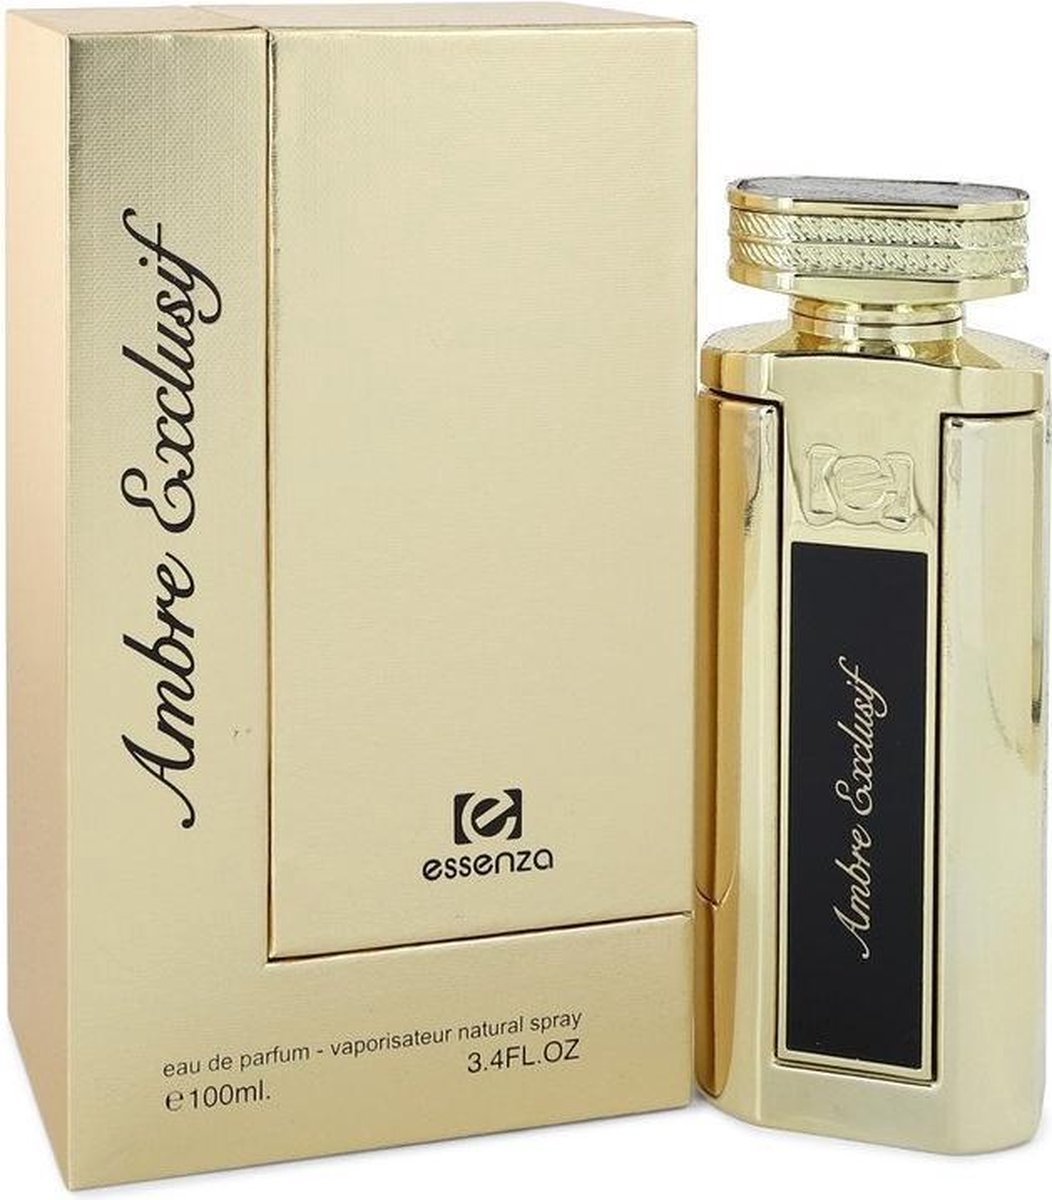 Ambre Exclusif by Essenza 100 ml - Eau De Parfum Spray